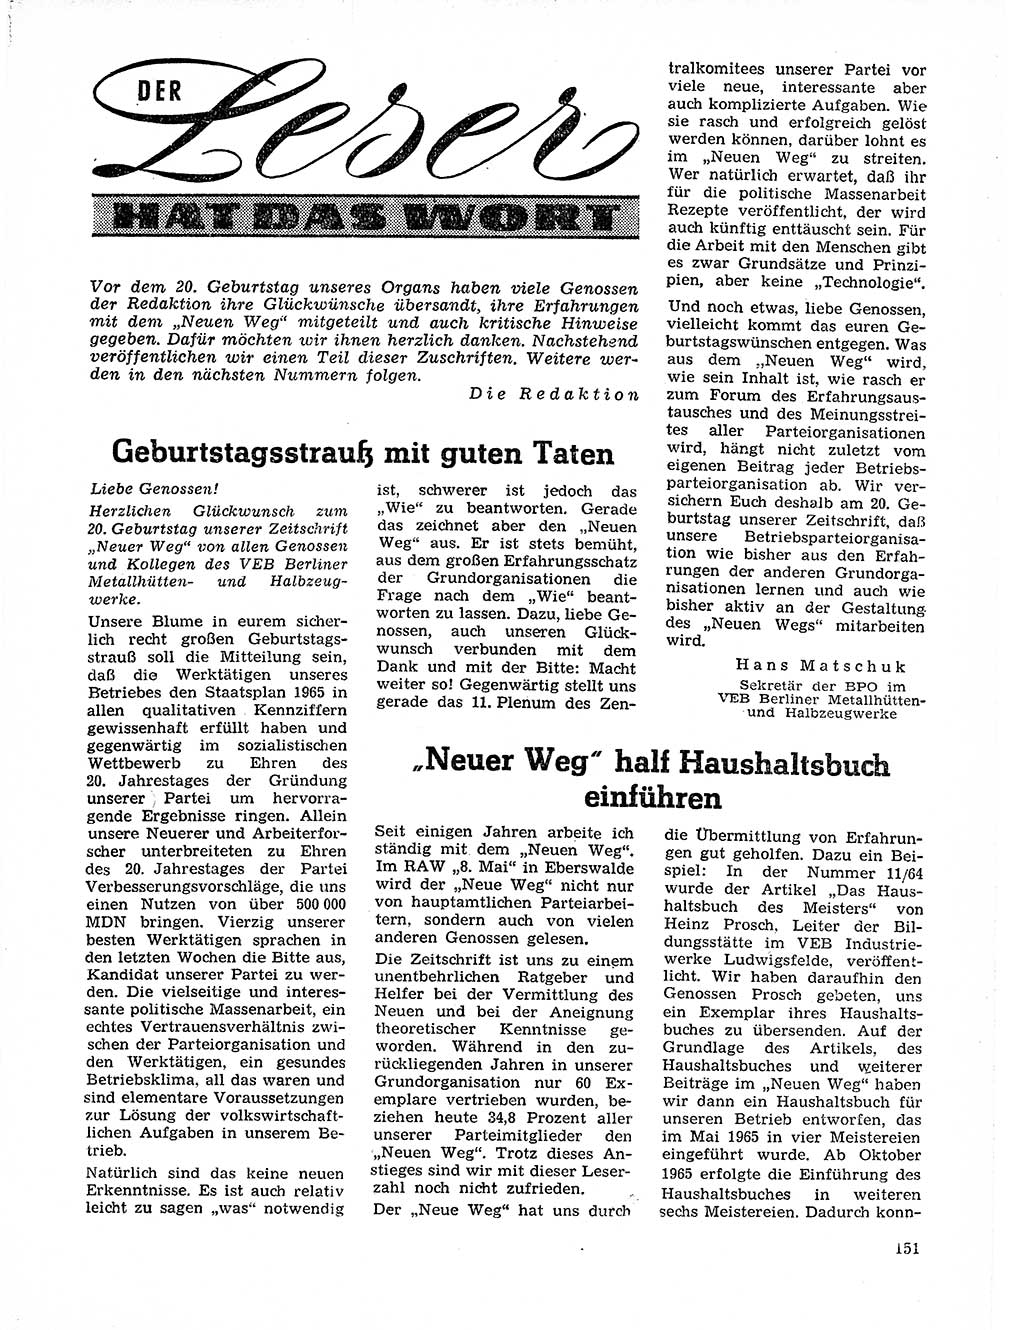 Neuer Weg (NW), Organ des Zentralkomitees (ZK) der SED (Sozialistische Einheitspartei Deutschlands) für Fragen des Parteilebens, 21. Jahrgang [Deutsche Demokratische Republik (DDR)] 1966, Seite 151 (NW ZK SED DDR 1966, S. 151)